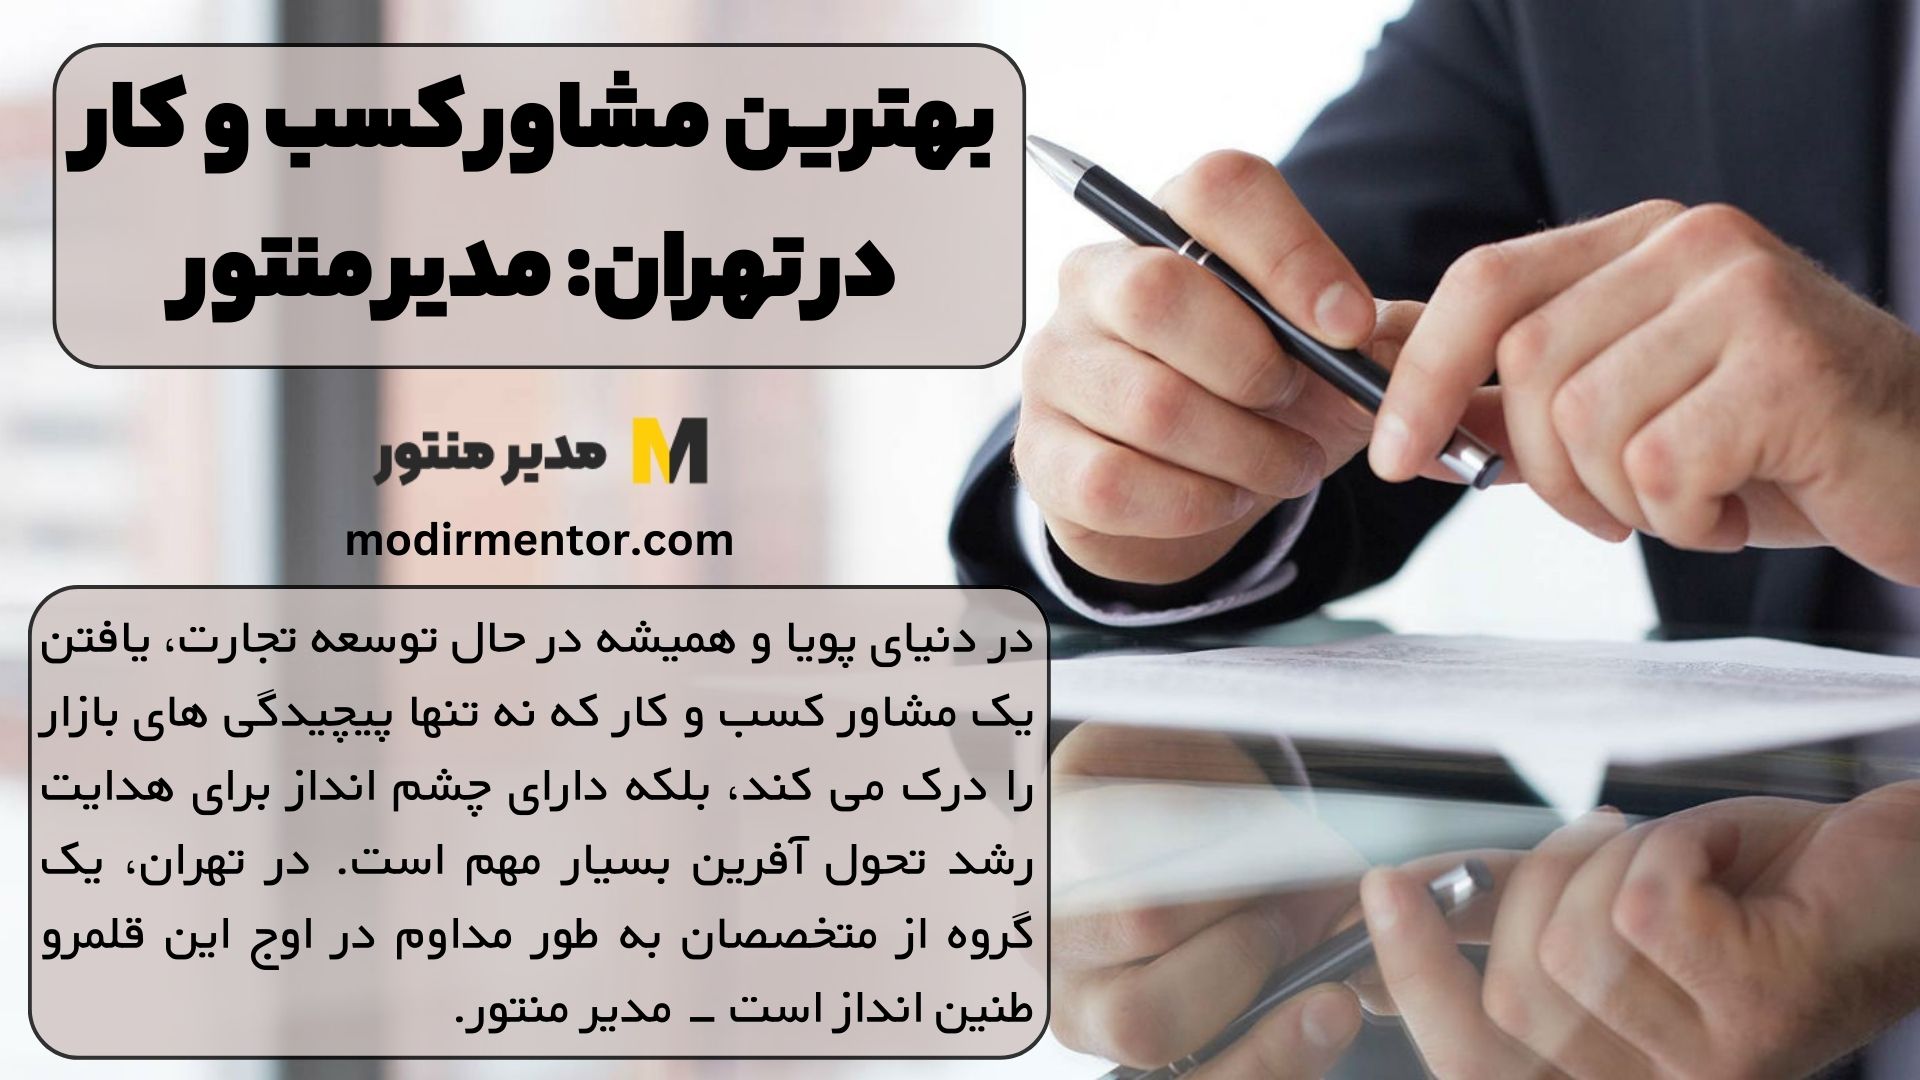 بهترین مشاور کسب و کار در تهران: مدیر منتور